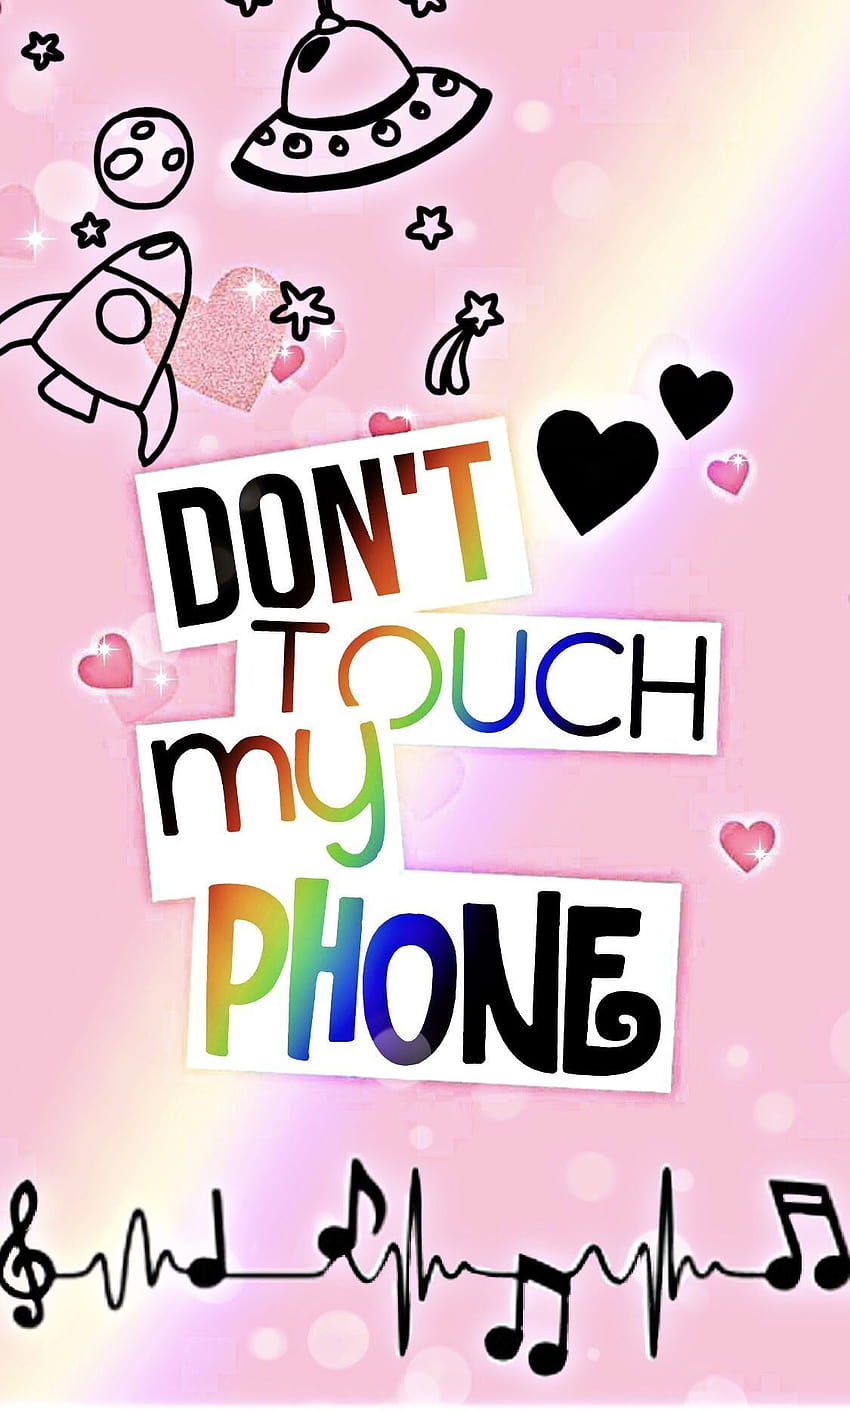 Tendencias para Girly Cute Rose Gold Dont Touch My Phone, tendencia de iphone 2020 fondo de pantalla del teléfono